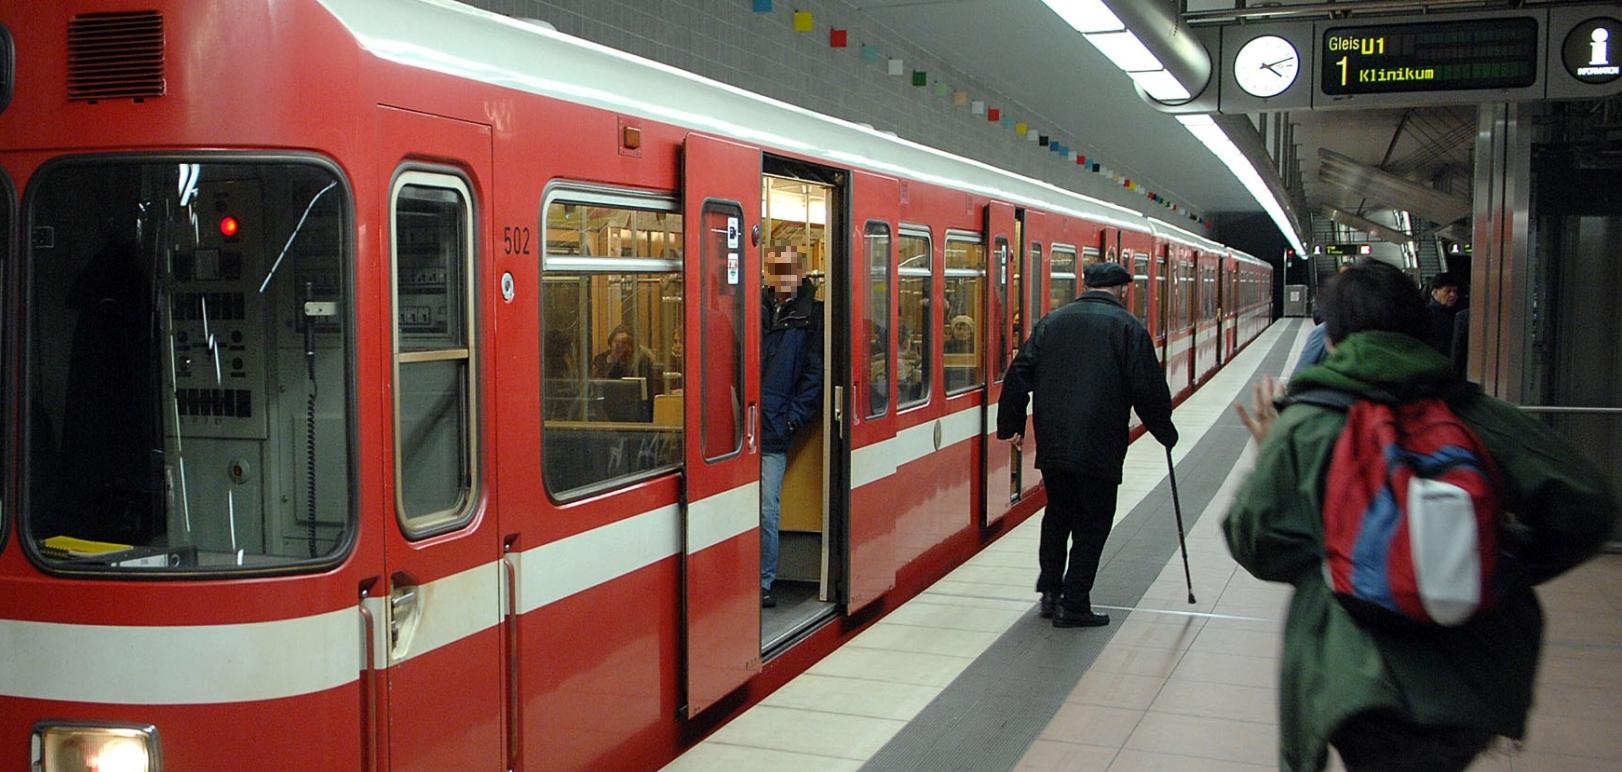 Nun ist es entschieden: Die U-Bahn-Linie 1 bleibt weiterhin mit Fahrer.